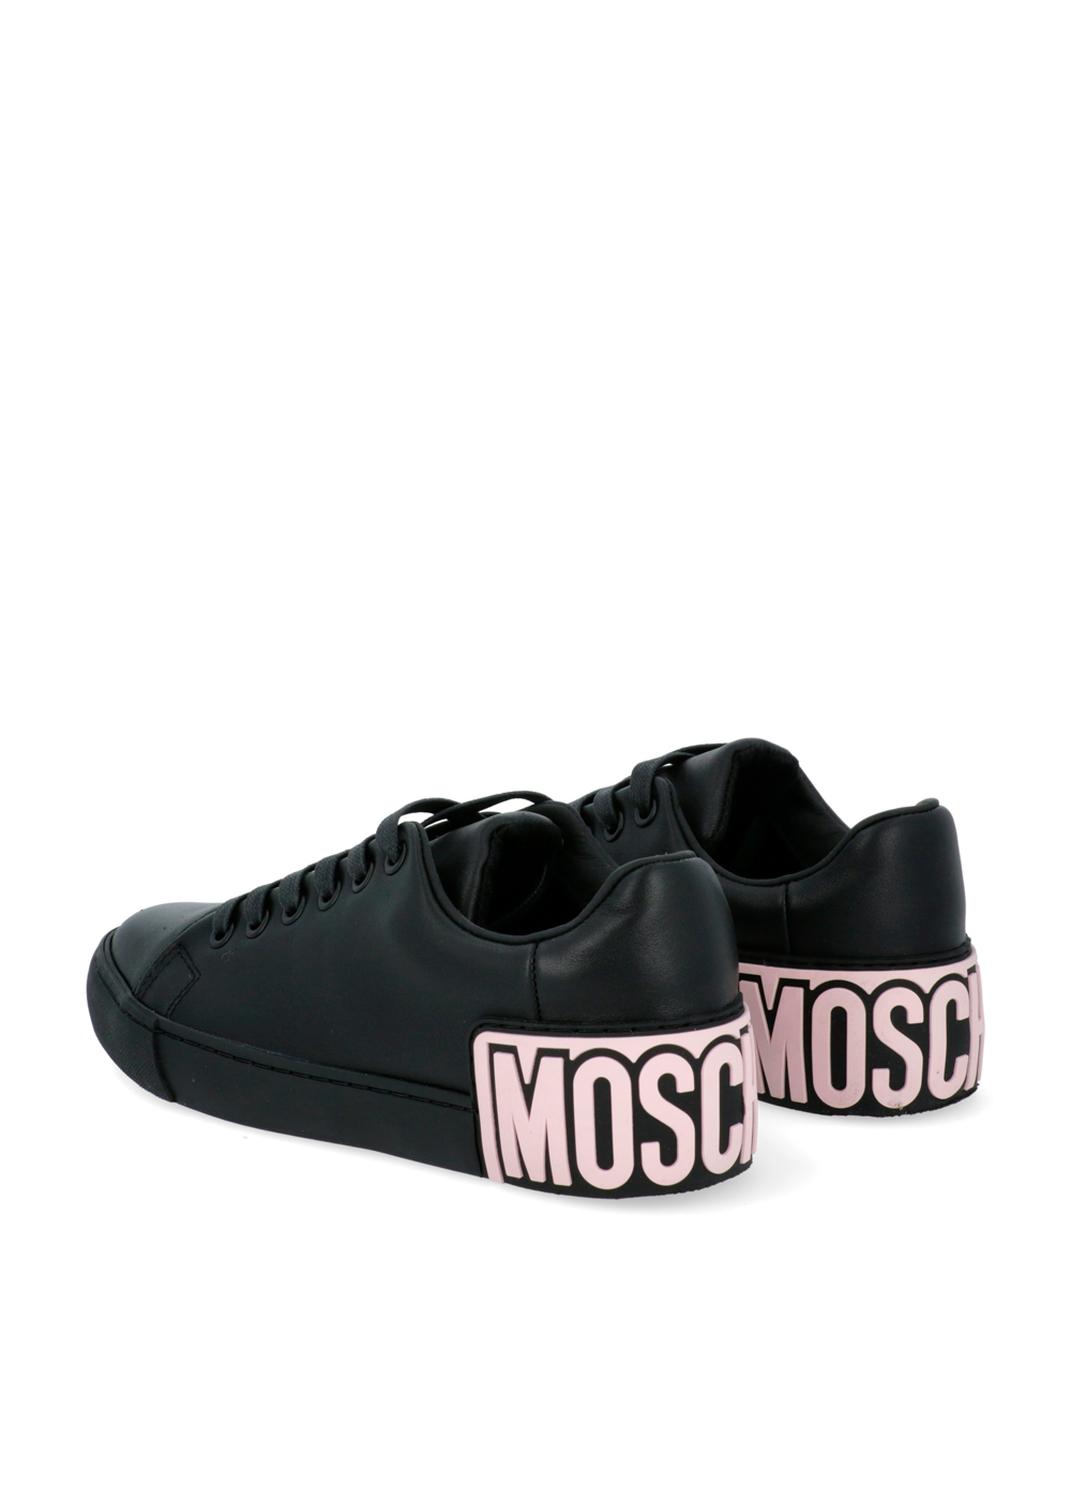 Moschino sneakers con parche de logo para hombre MSC-MB15402